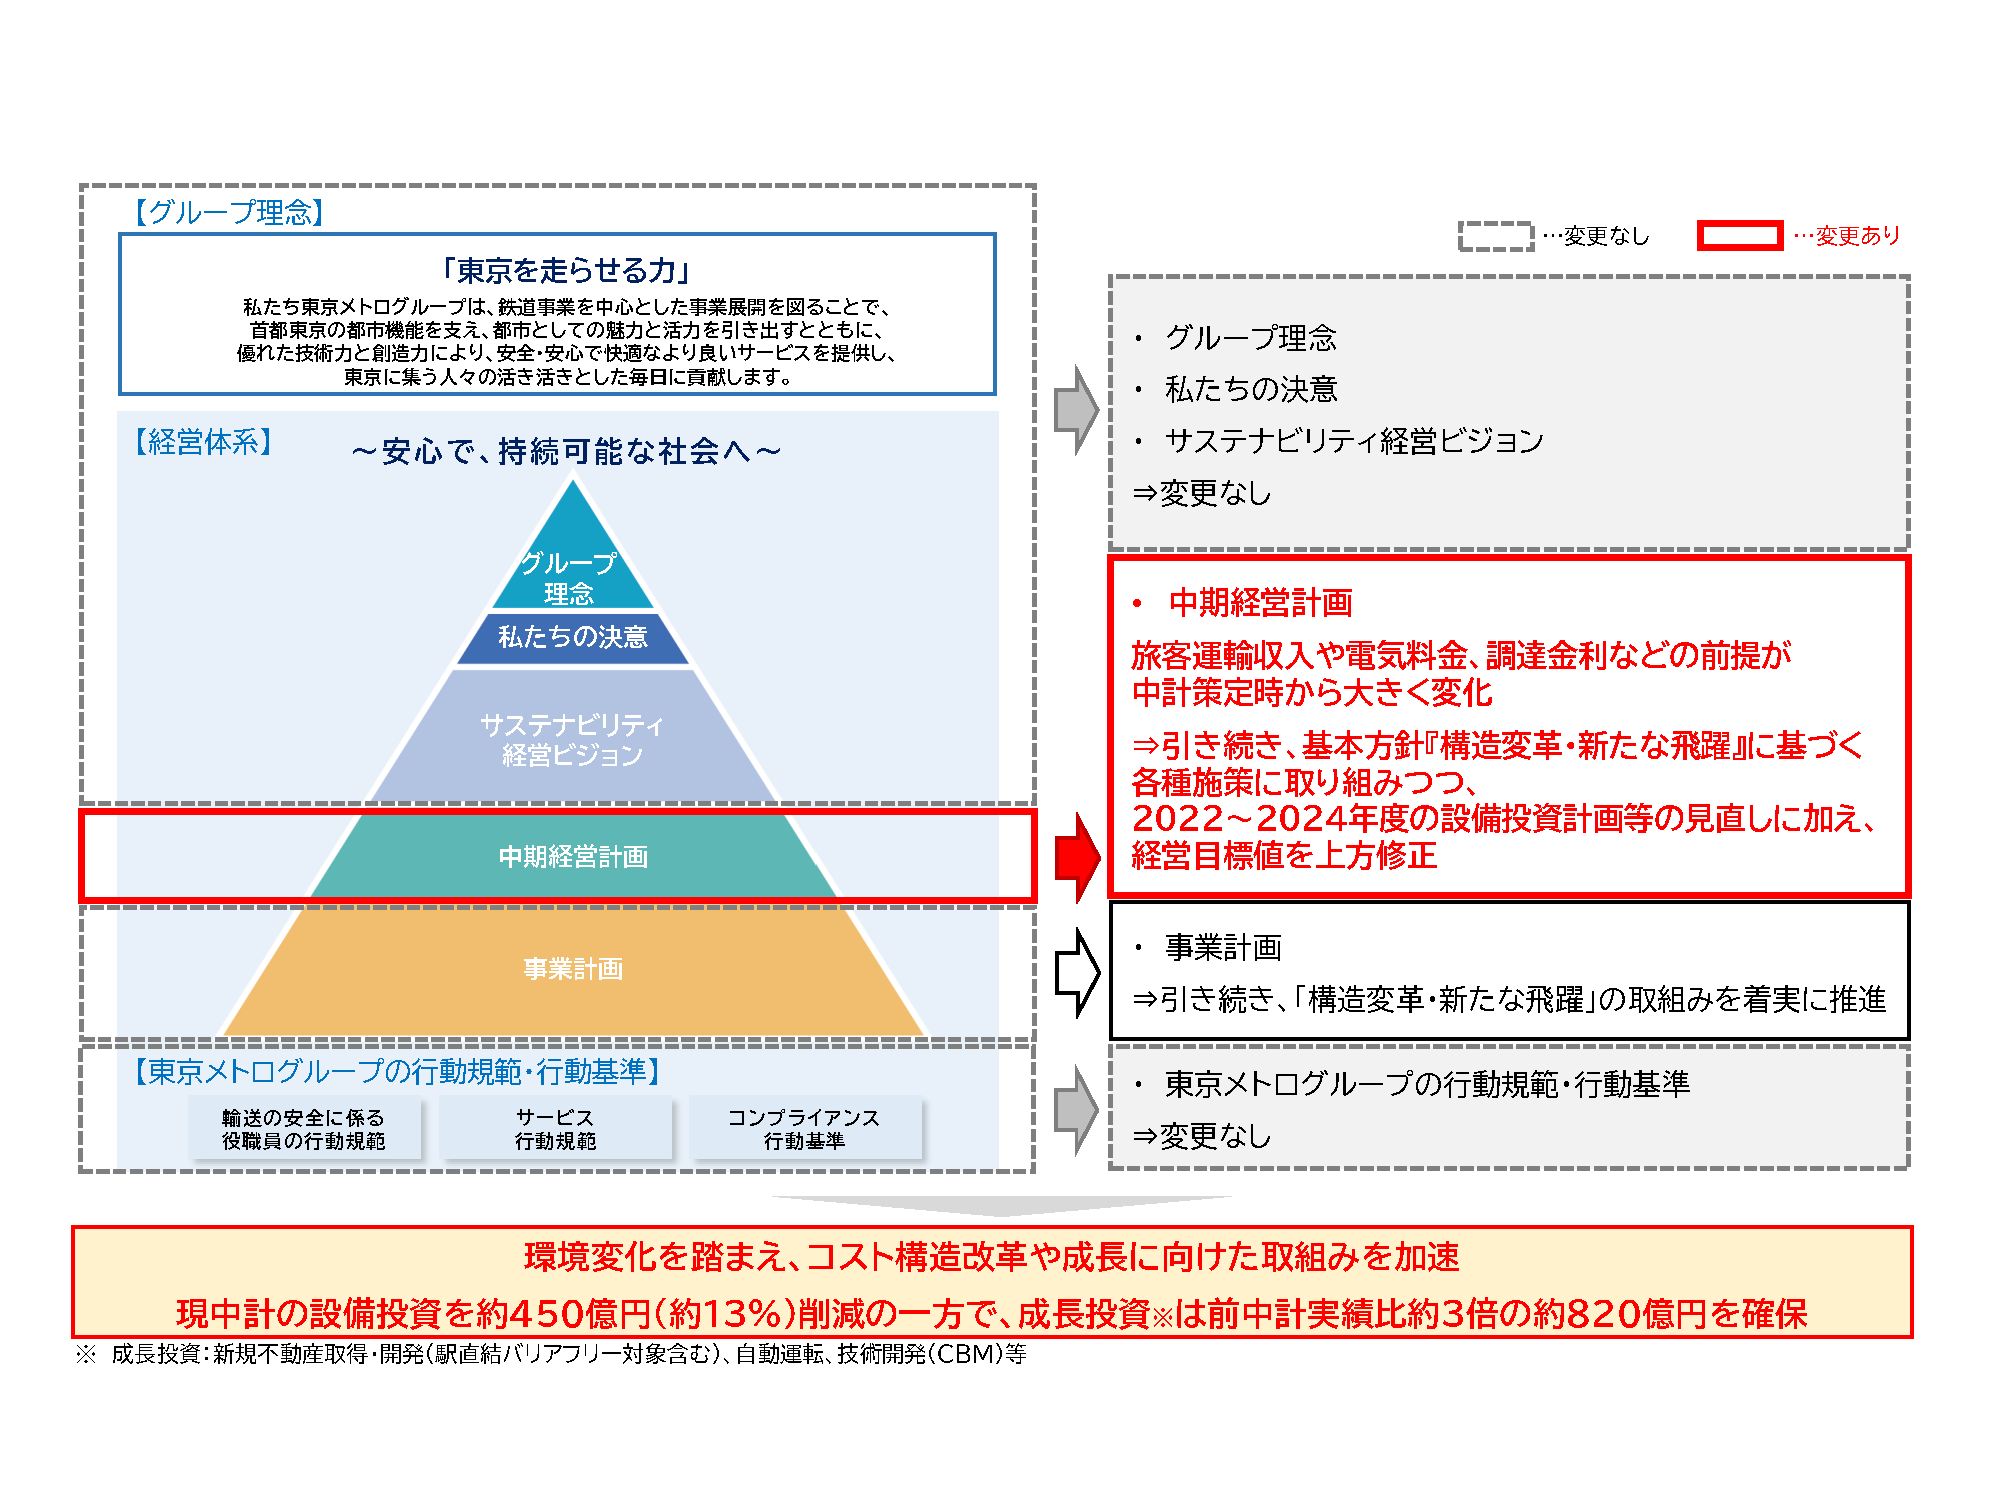 中期経営計画「東京メトロプラン2024」の変更について